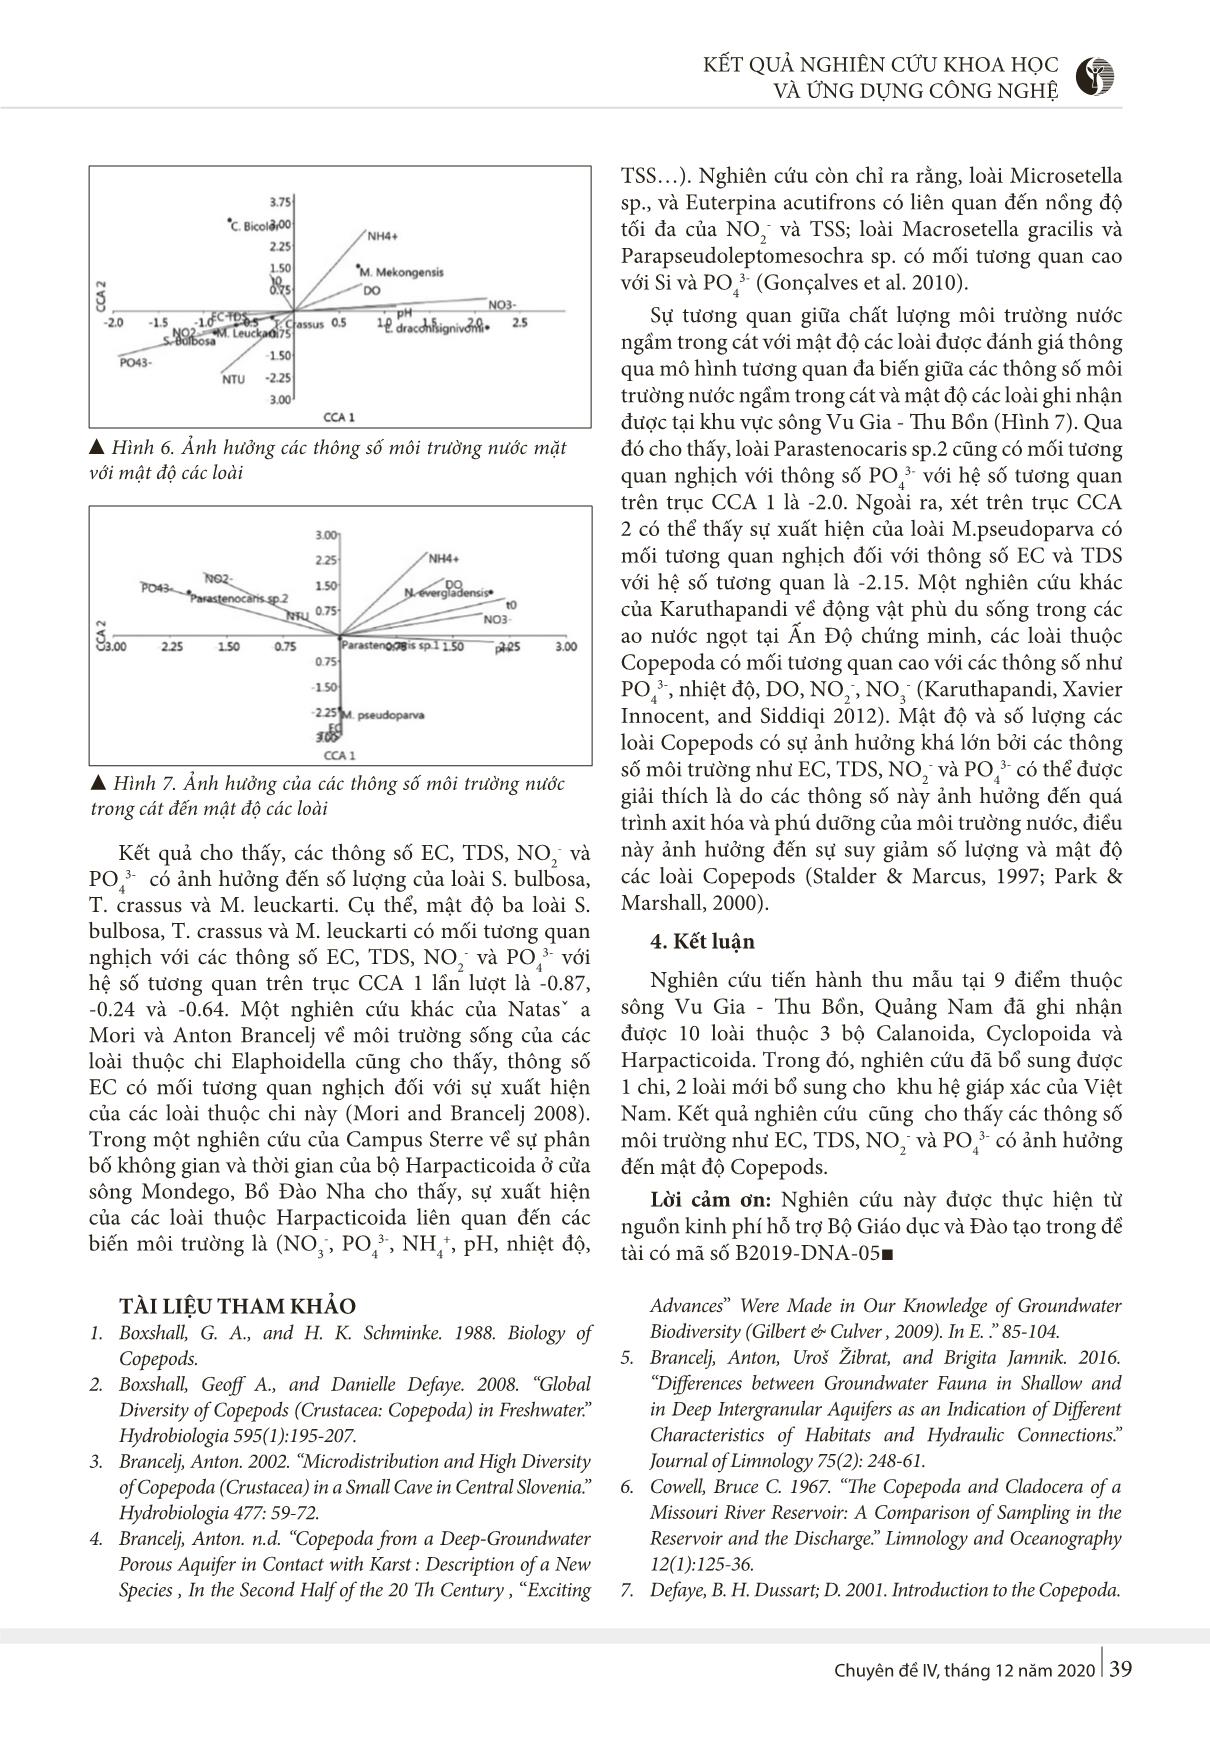 Nghiên cứu thành phần phân lớp giáp xác chân chèo (Copepoda) tại sông Vu Gia - Thu Bồn, Quảng Nam trang 4